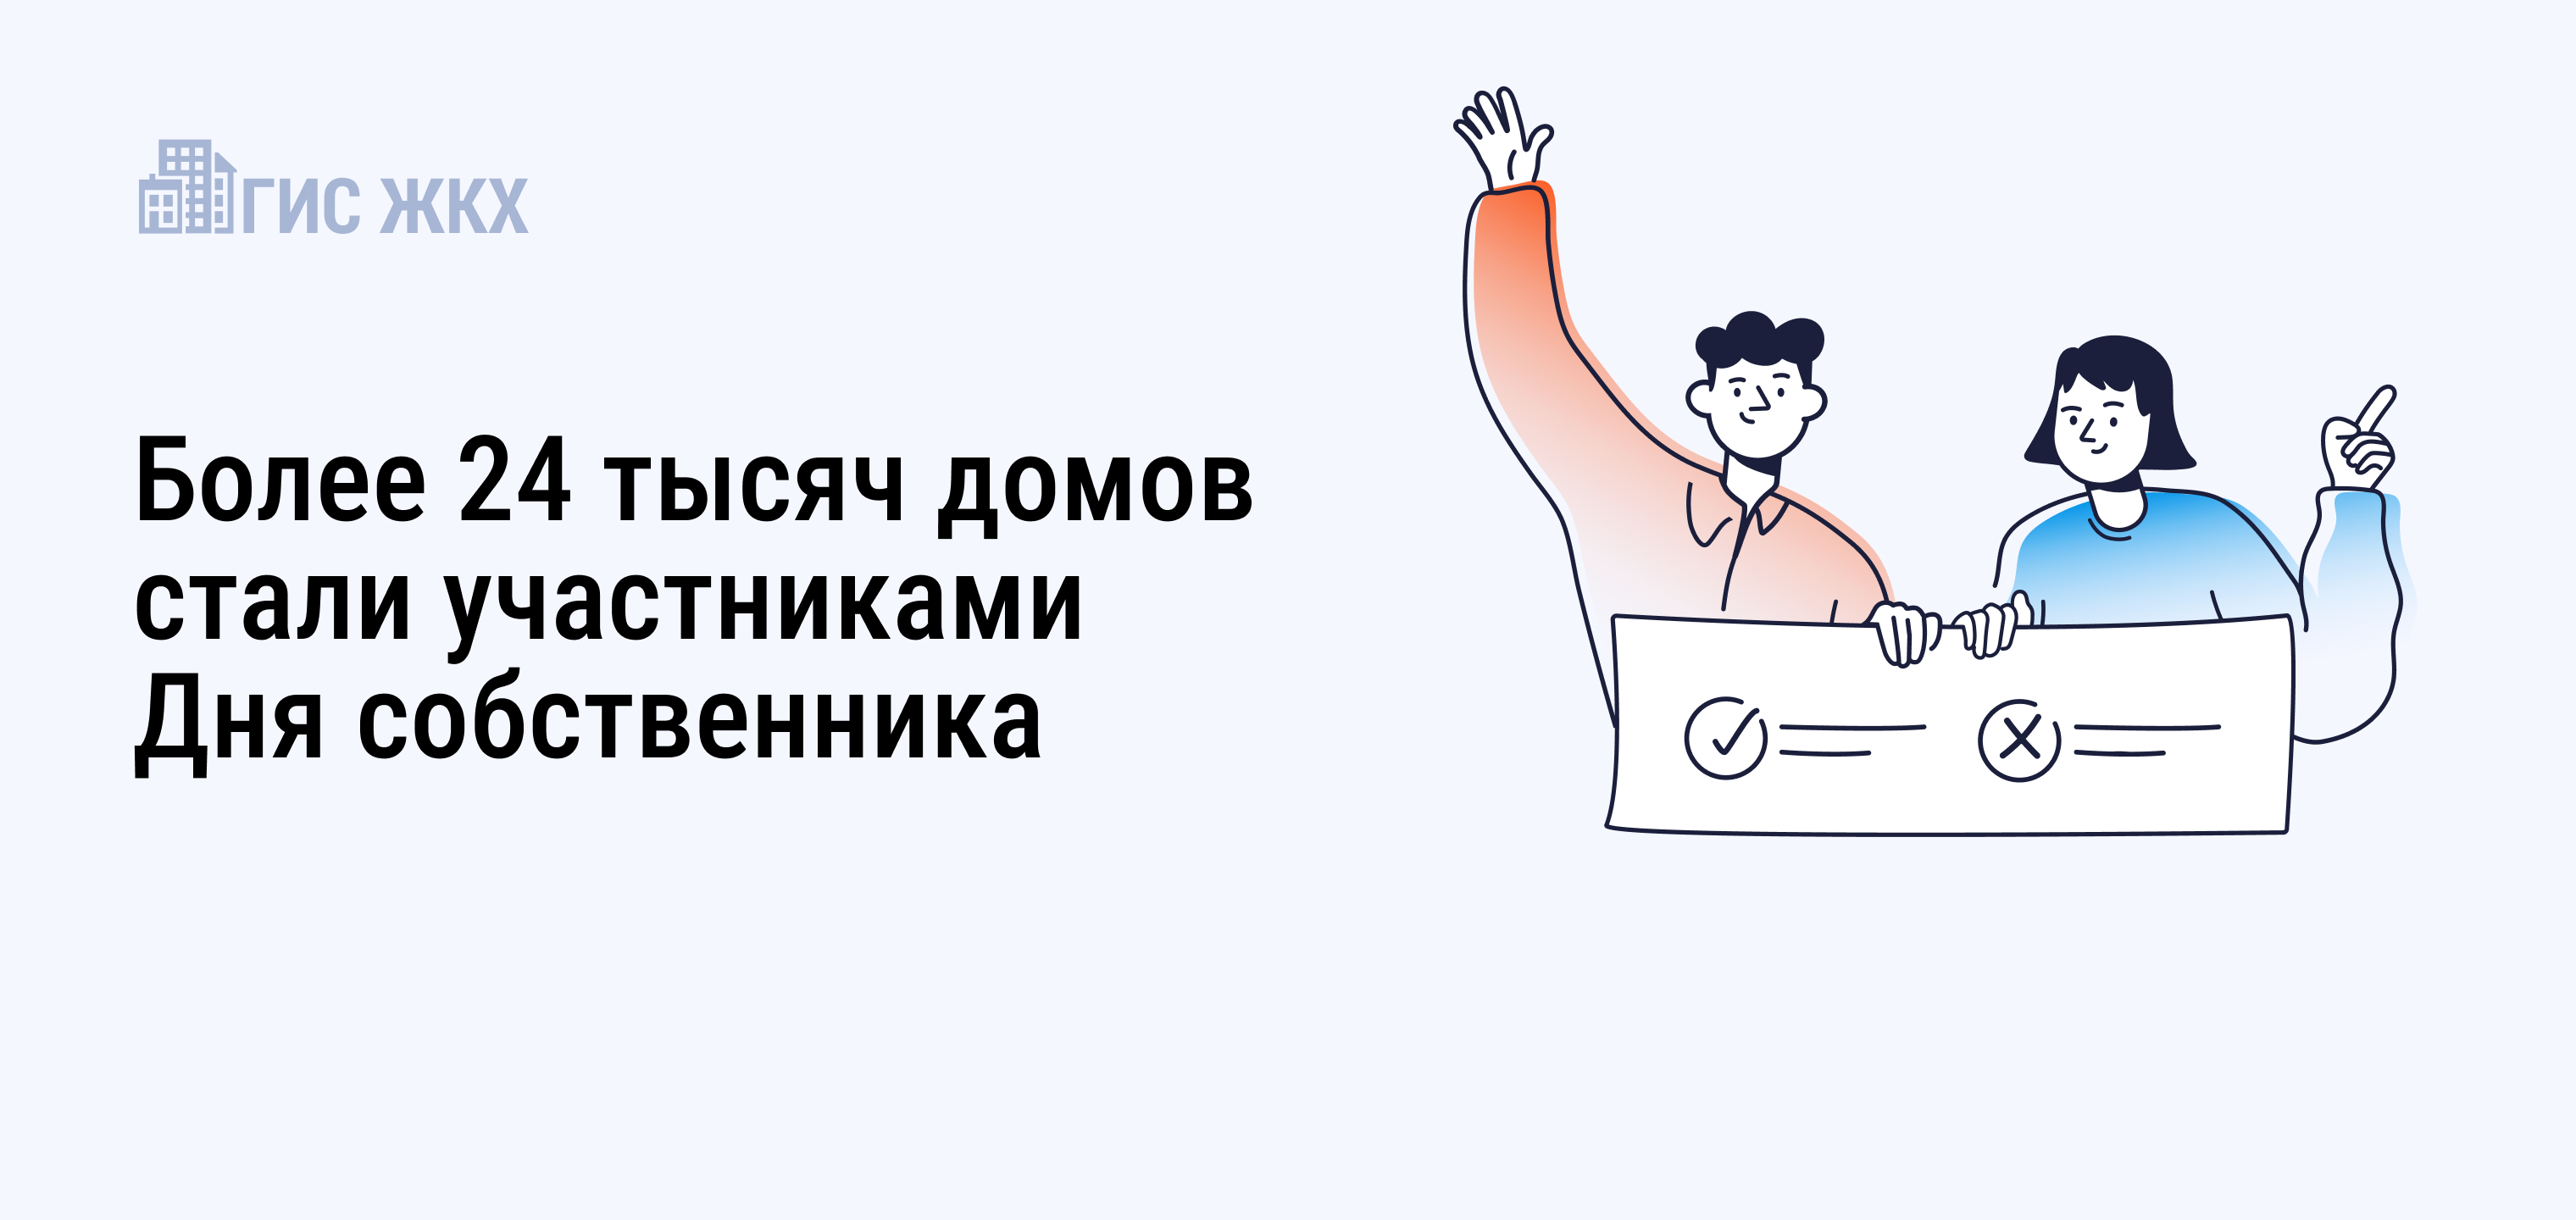 В России по 13 июня проходит проект «День собственника».